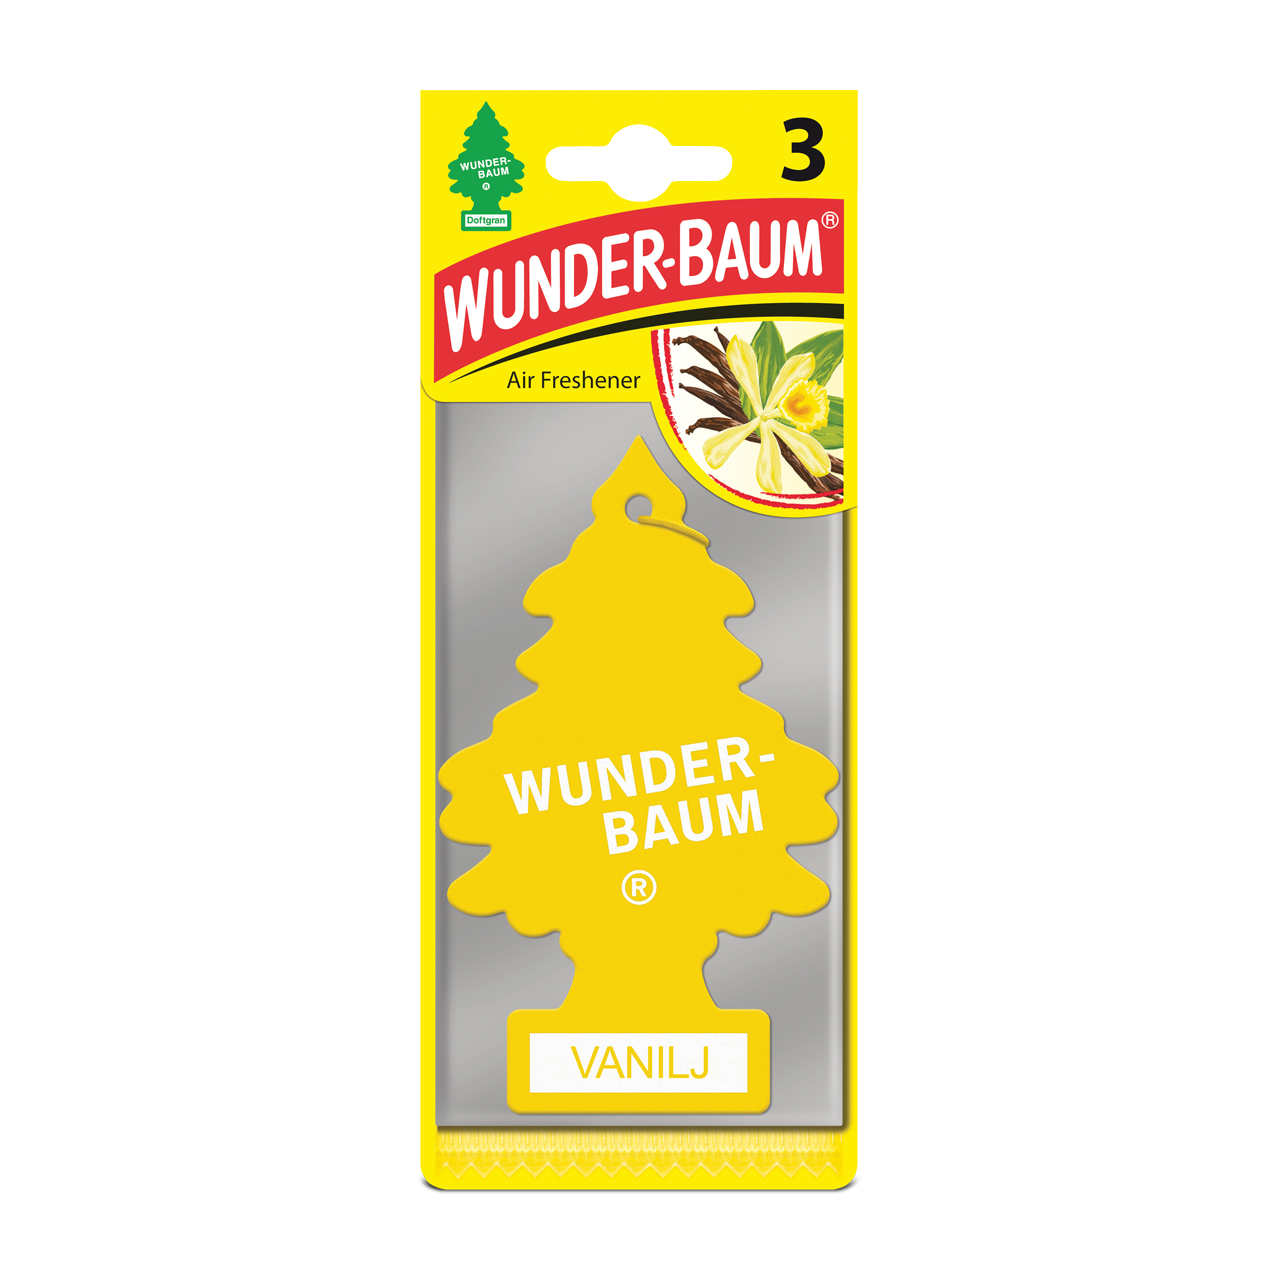 Wunder-Baum Air Freshener Vanilla 3-Pack - Now 7% Savings